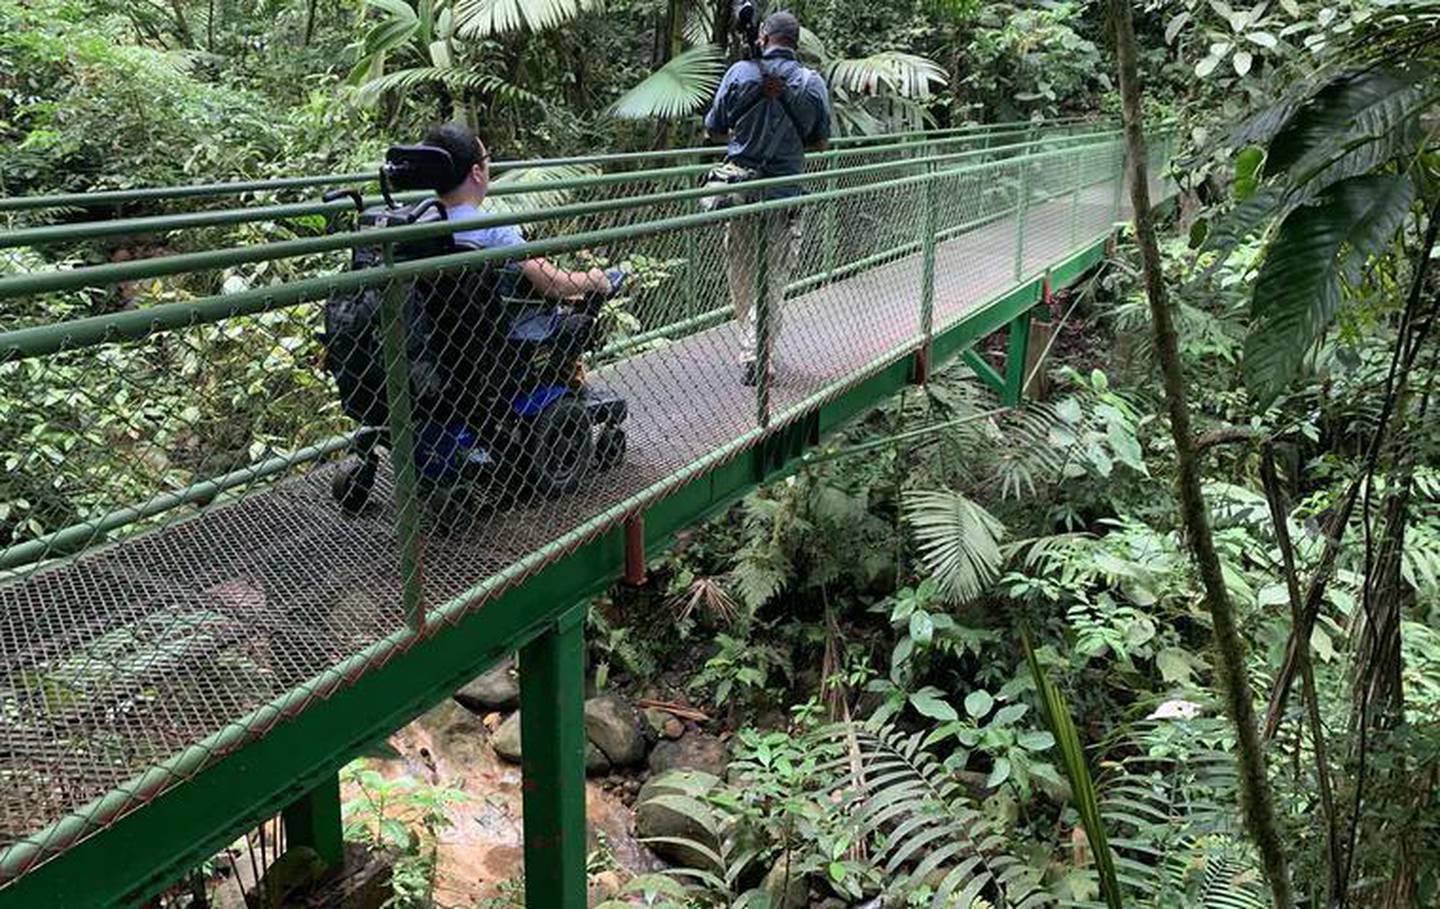 Adentrarse en el bosque en diferentes zonas de Costa Rica es posible para todos, porque las empresas adecuaron los senderos con ese fin, bajo el objetivo de que un destino sostenible debe ser accesible. Foto: Cortesía ICT